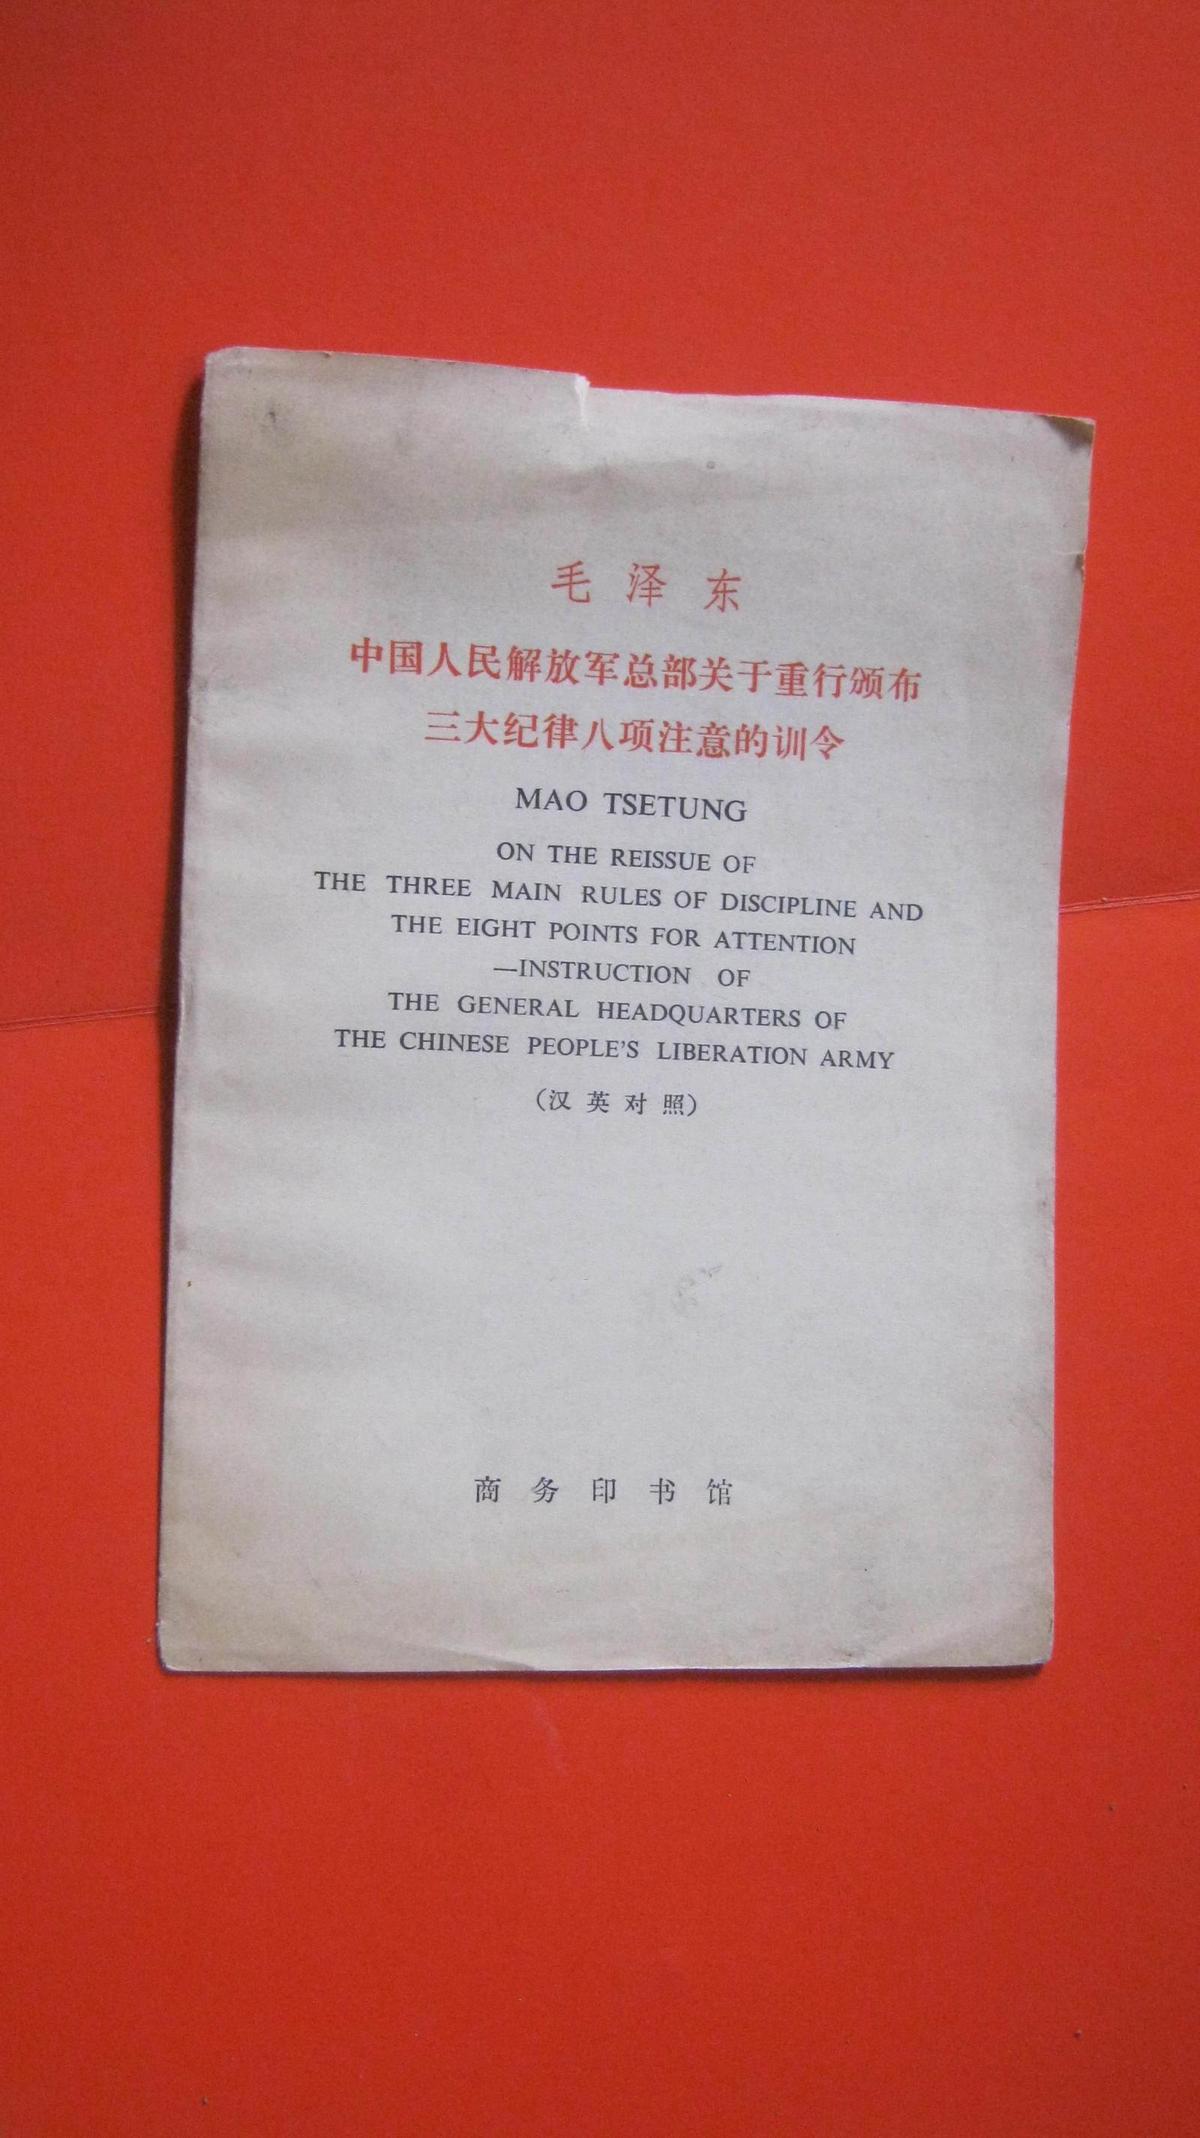 【14-2  毛泽东————英汉对照汉英对照）毛泽东中国人民解放军总部关于重行颁布三大纪律八项注意的训令